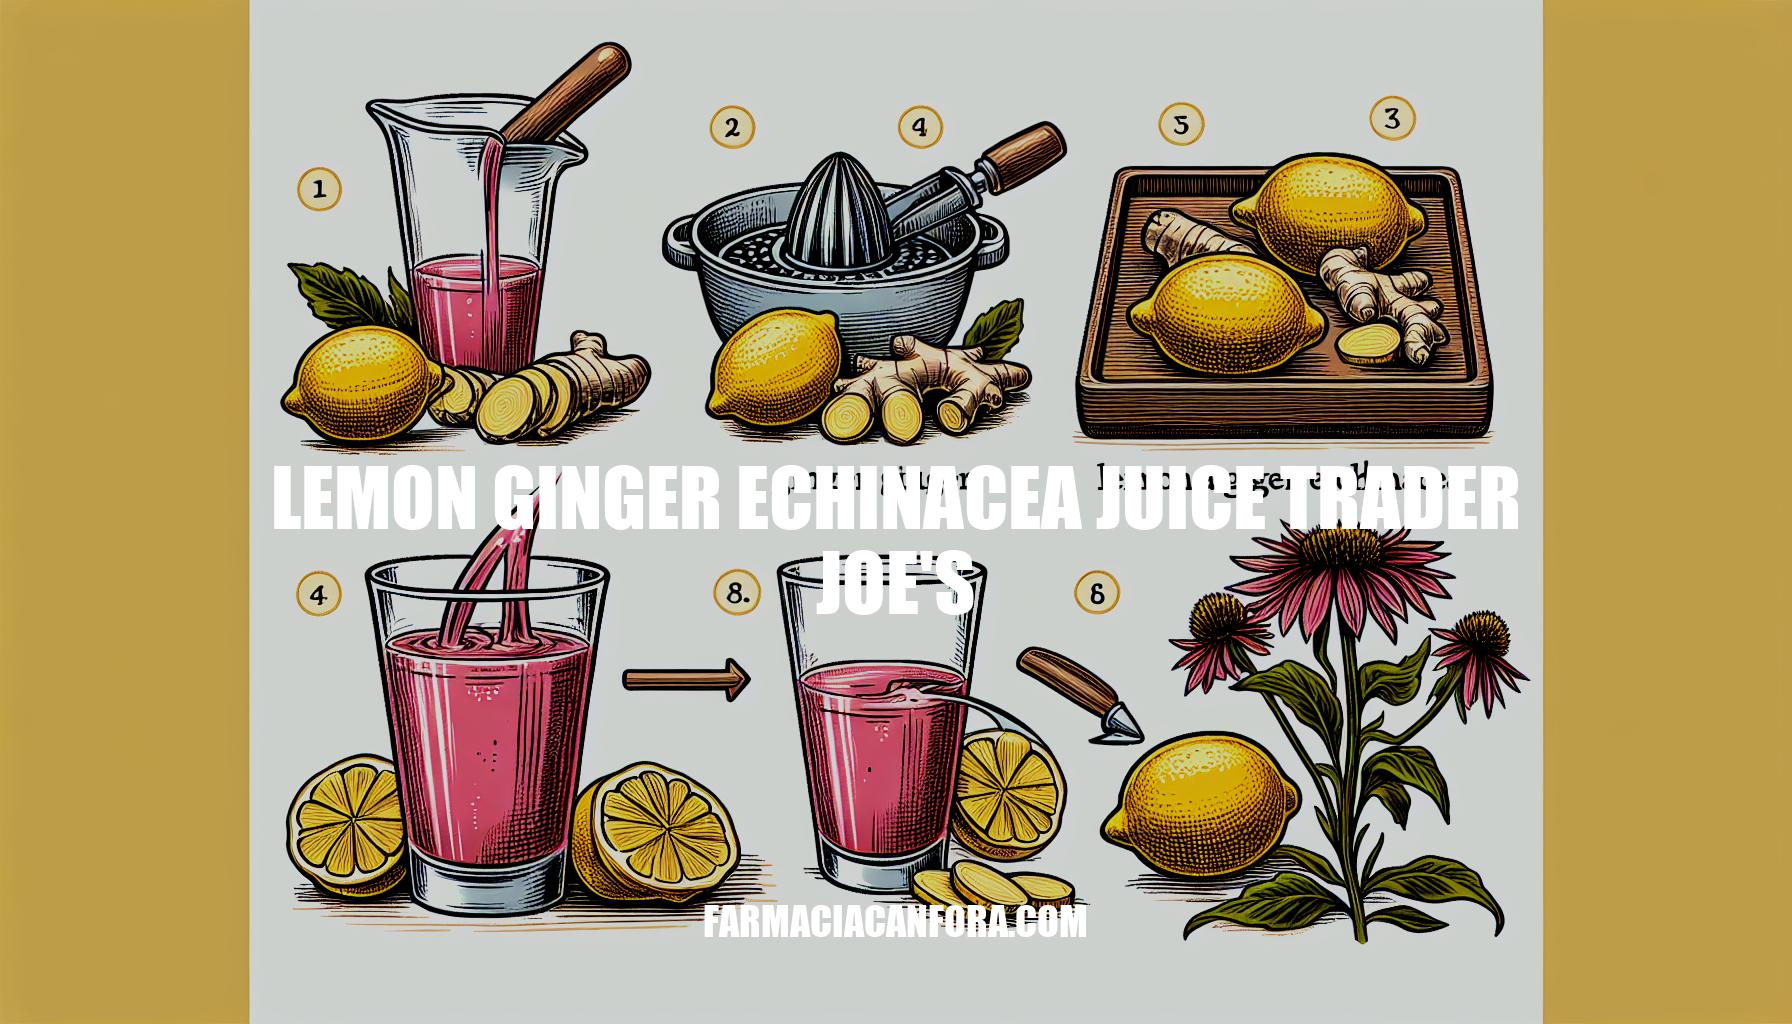 Lemon Ginger Echinacea Juice Trader Joe's Guide